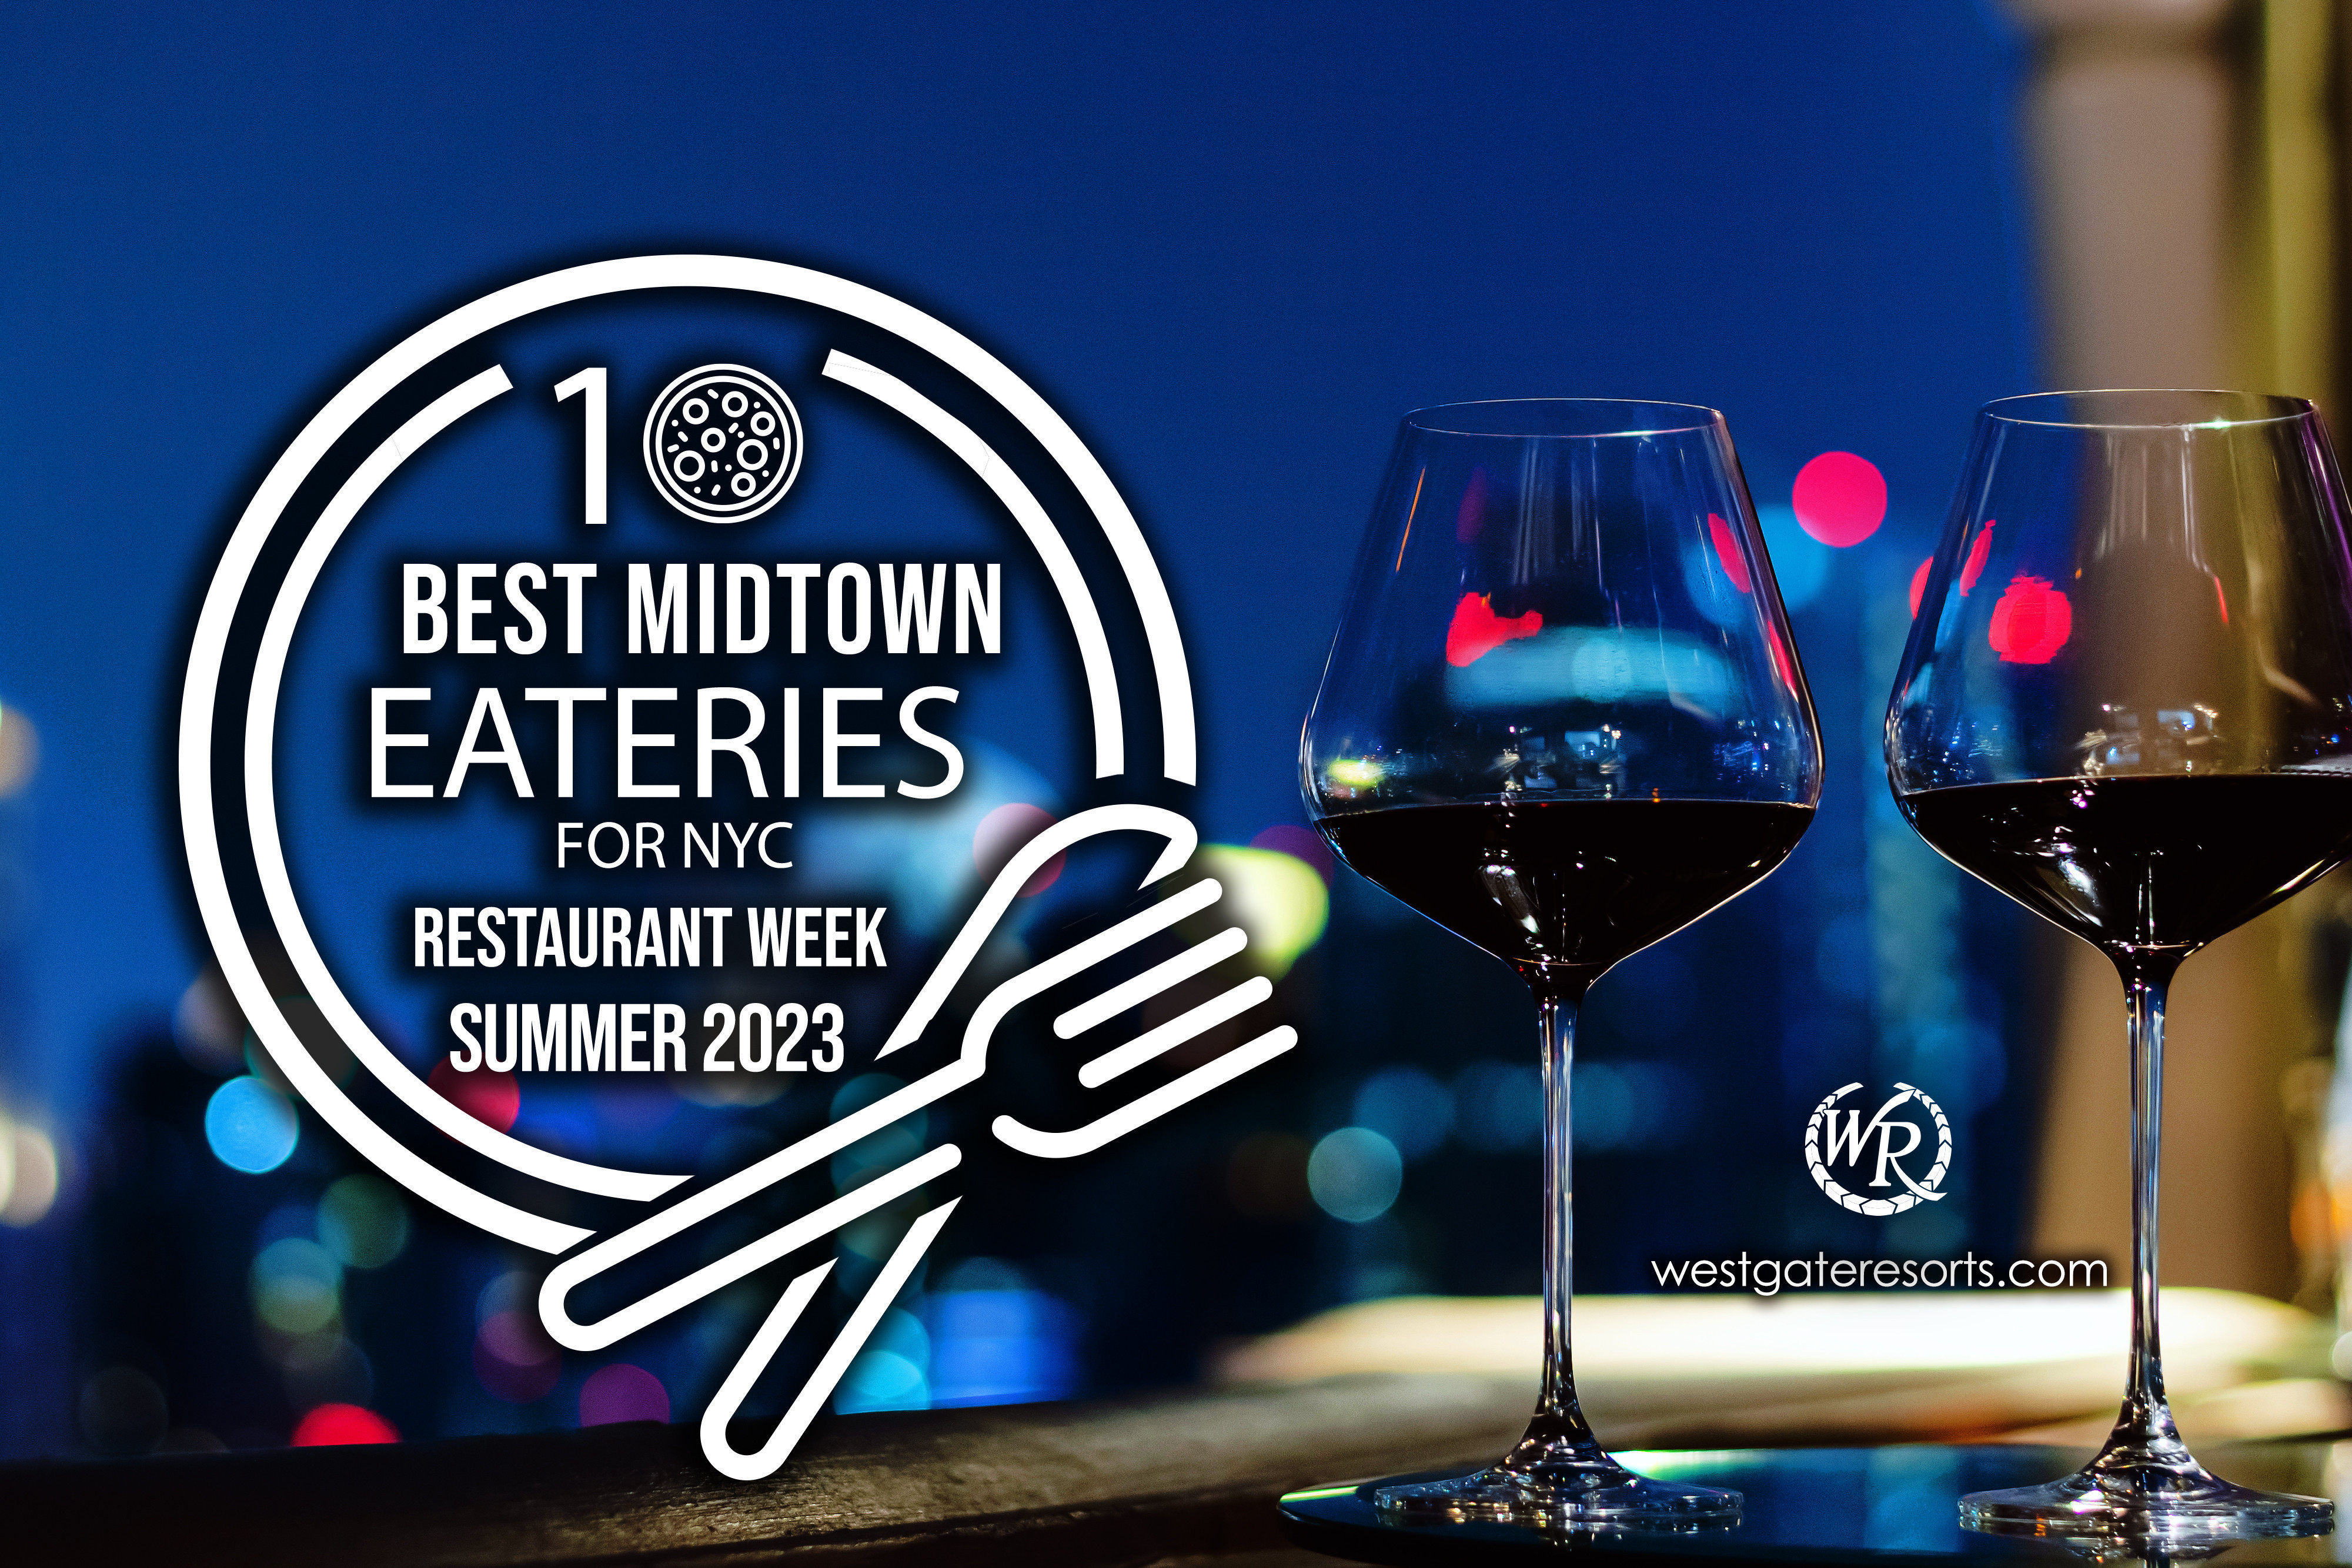 10 Best Midtown Eateries For NYC Restaurant Week Summer 2023